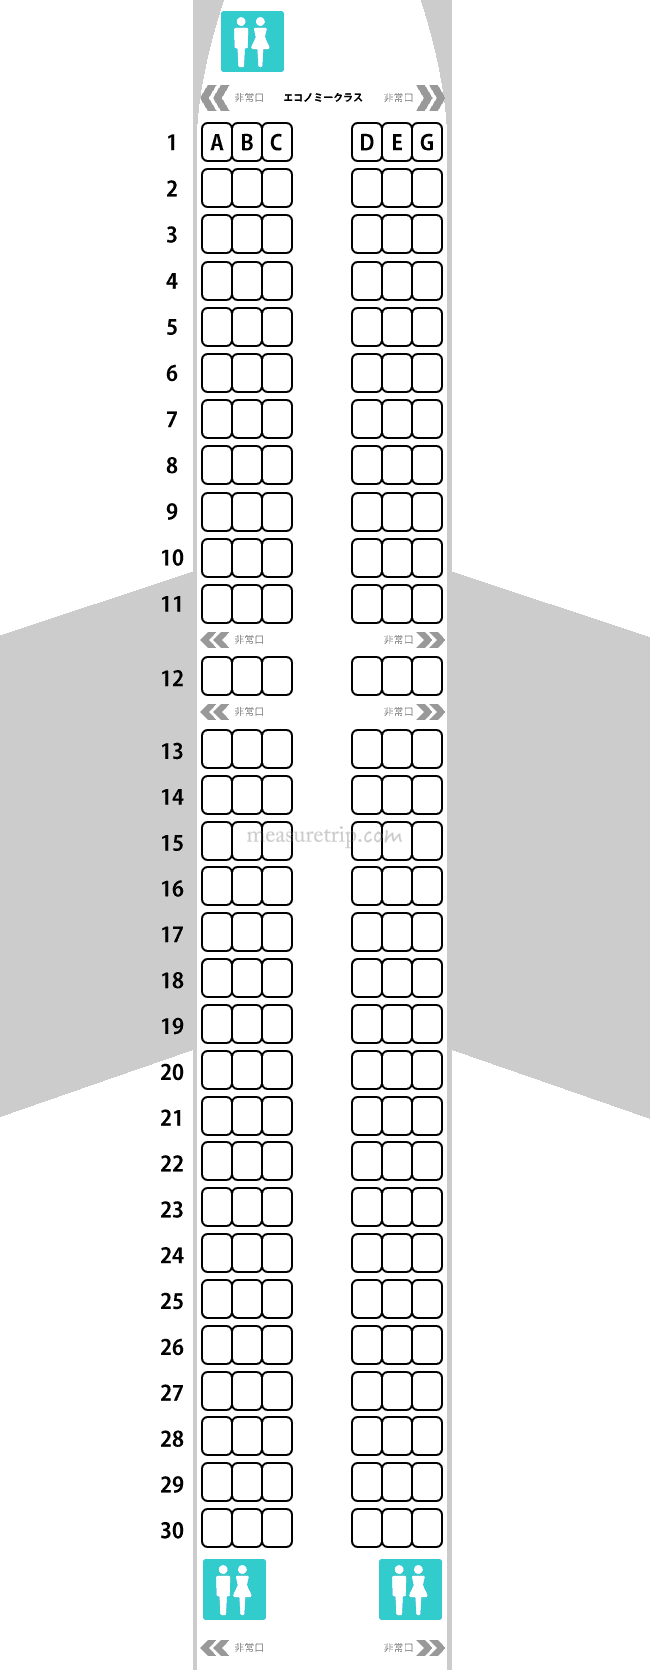 ピーチ国内線・A320 座席表